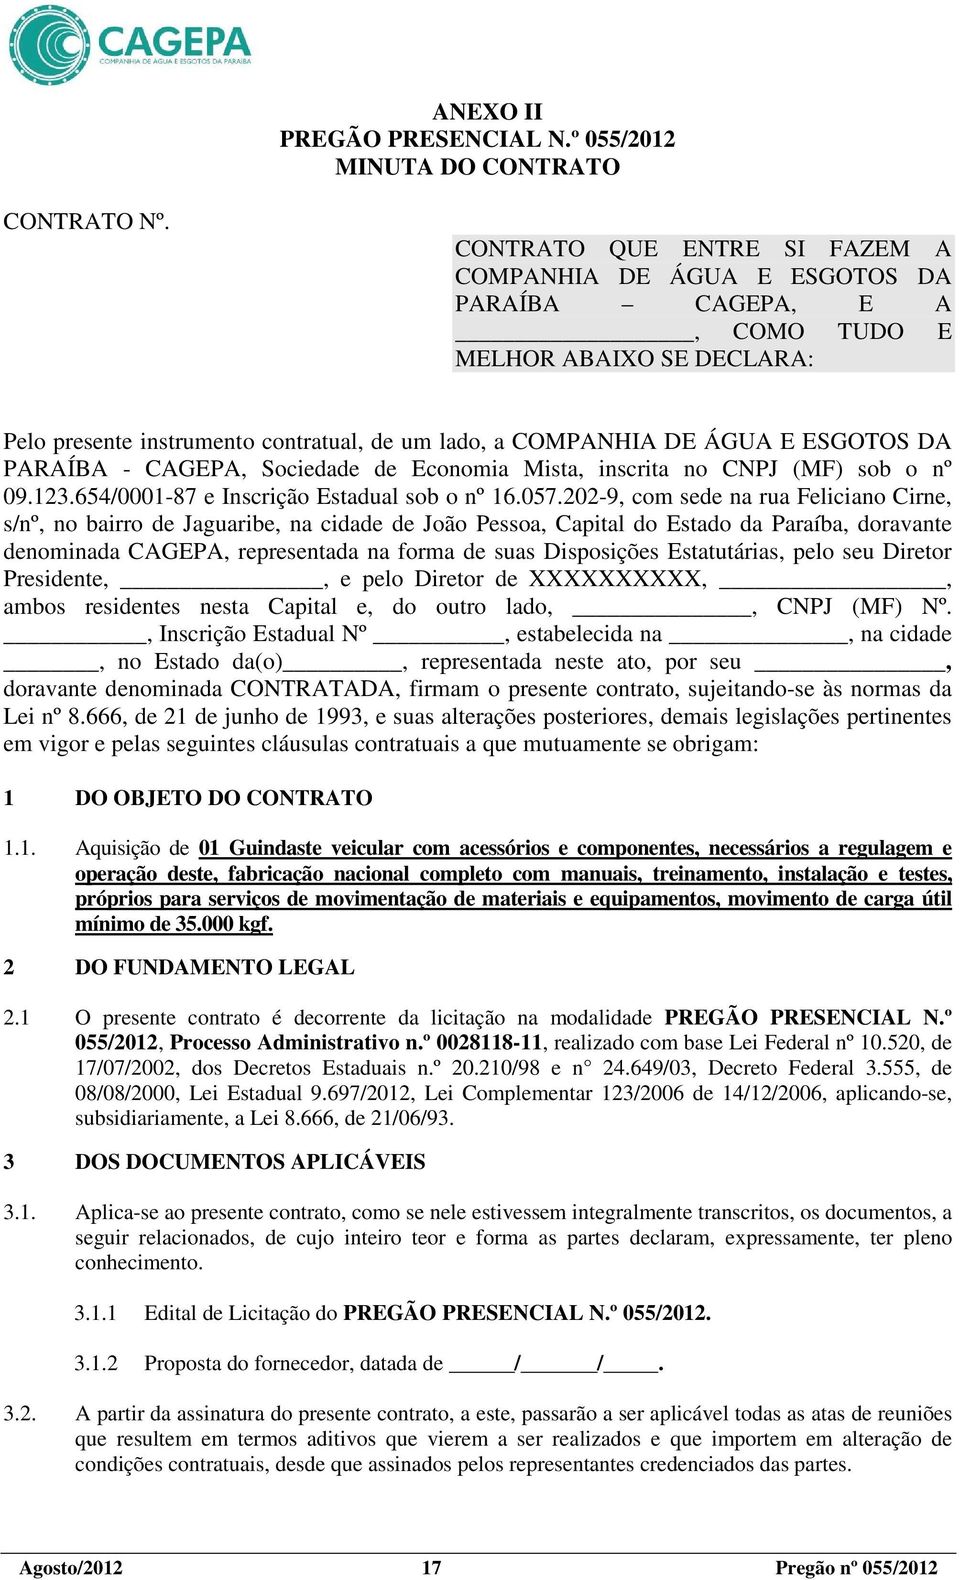 DA PARAÍBA - CAGEPA, Sociedade de Economia Mista, inscrita no CNPJ (MF) sob o nº 09.123.654/0001-87 e Inscrição Estadual sob o nº 16.057.